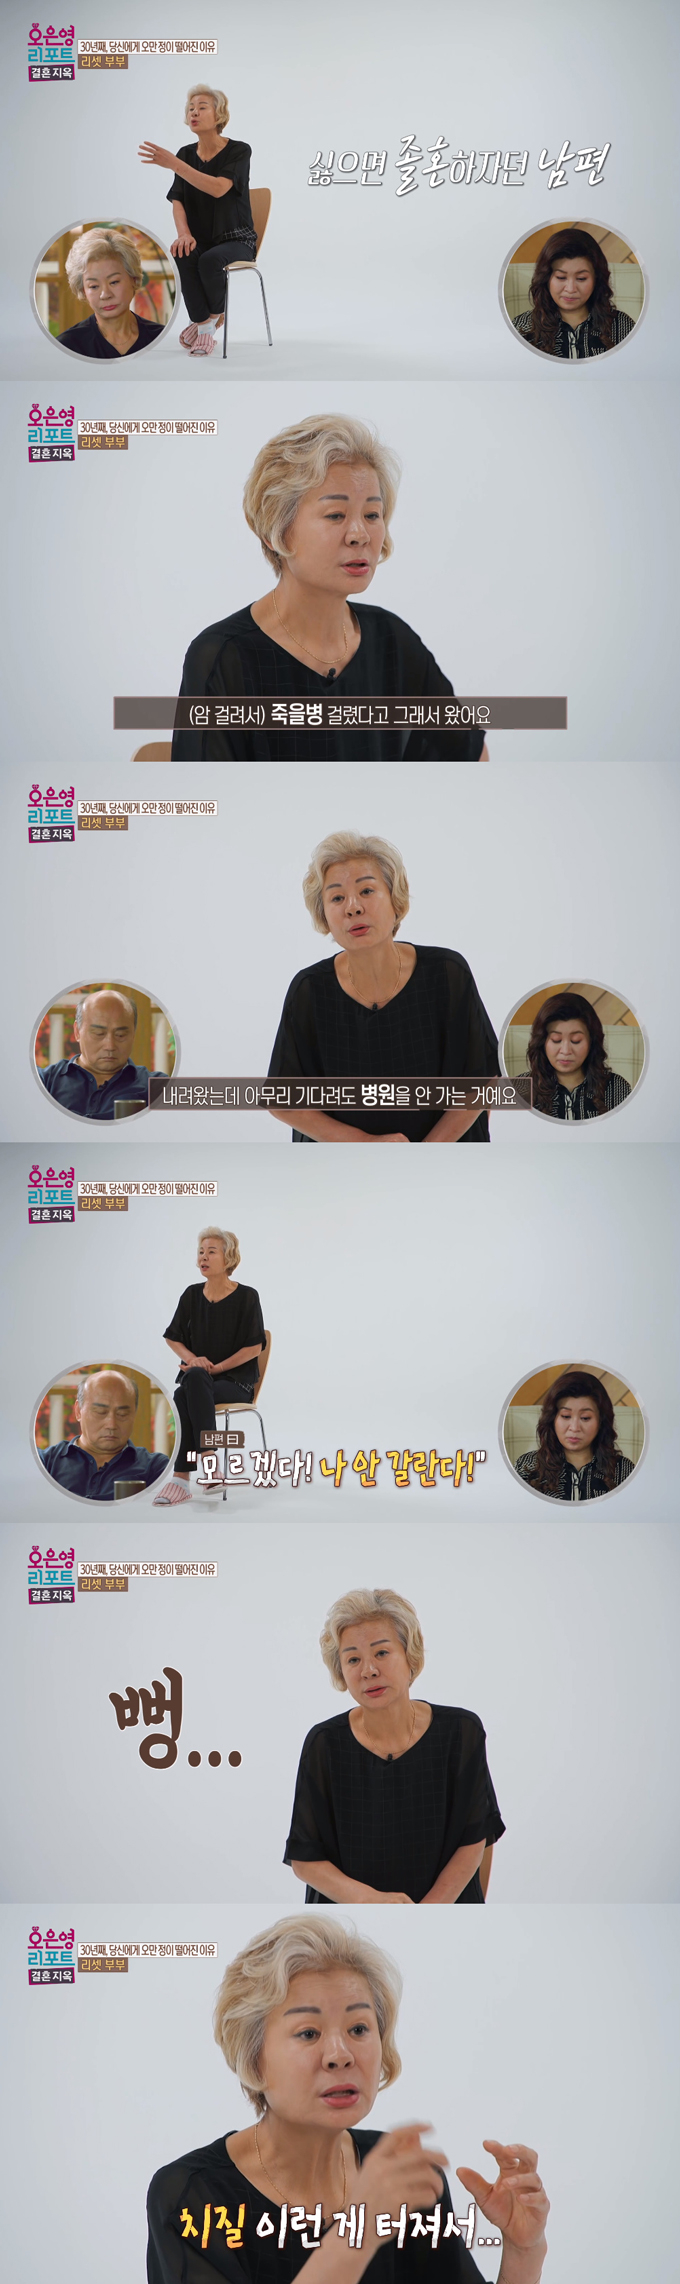 /사진=MBC '오은영 리포트-결혼지옥' 방송 화면